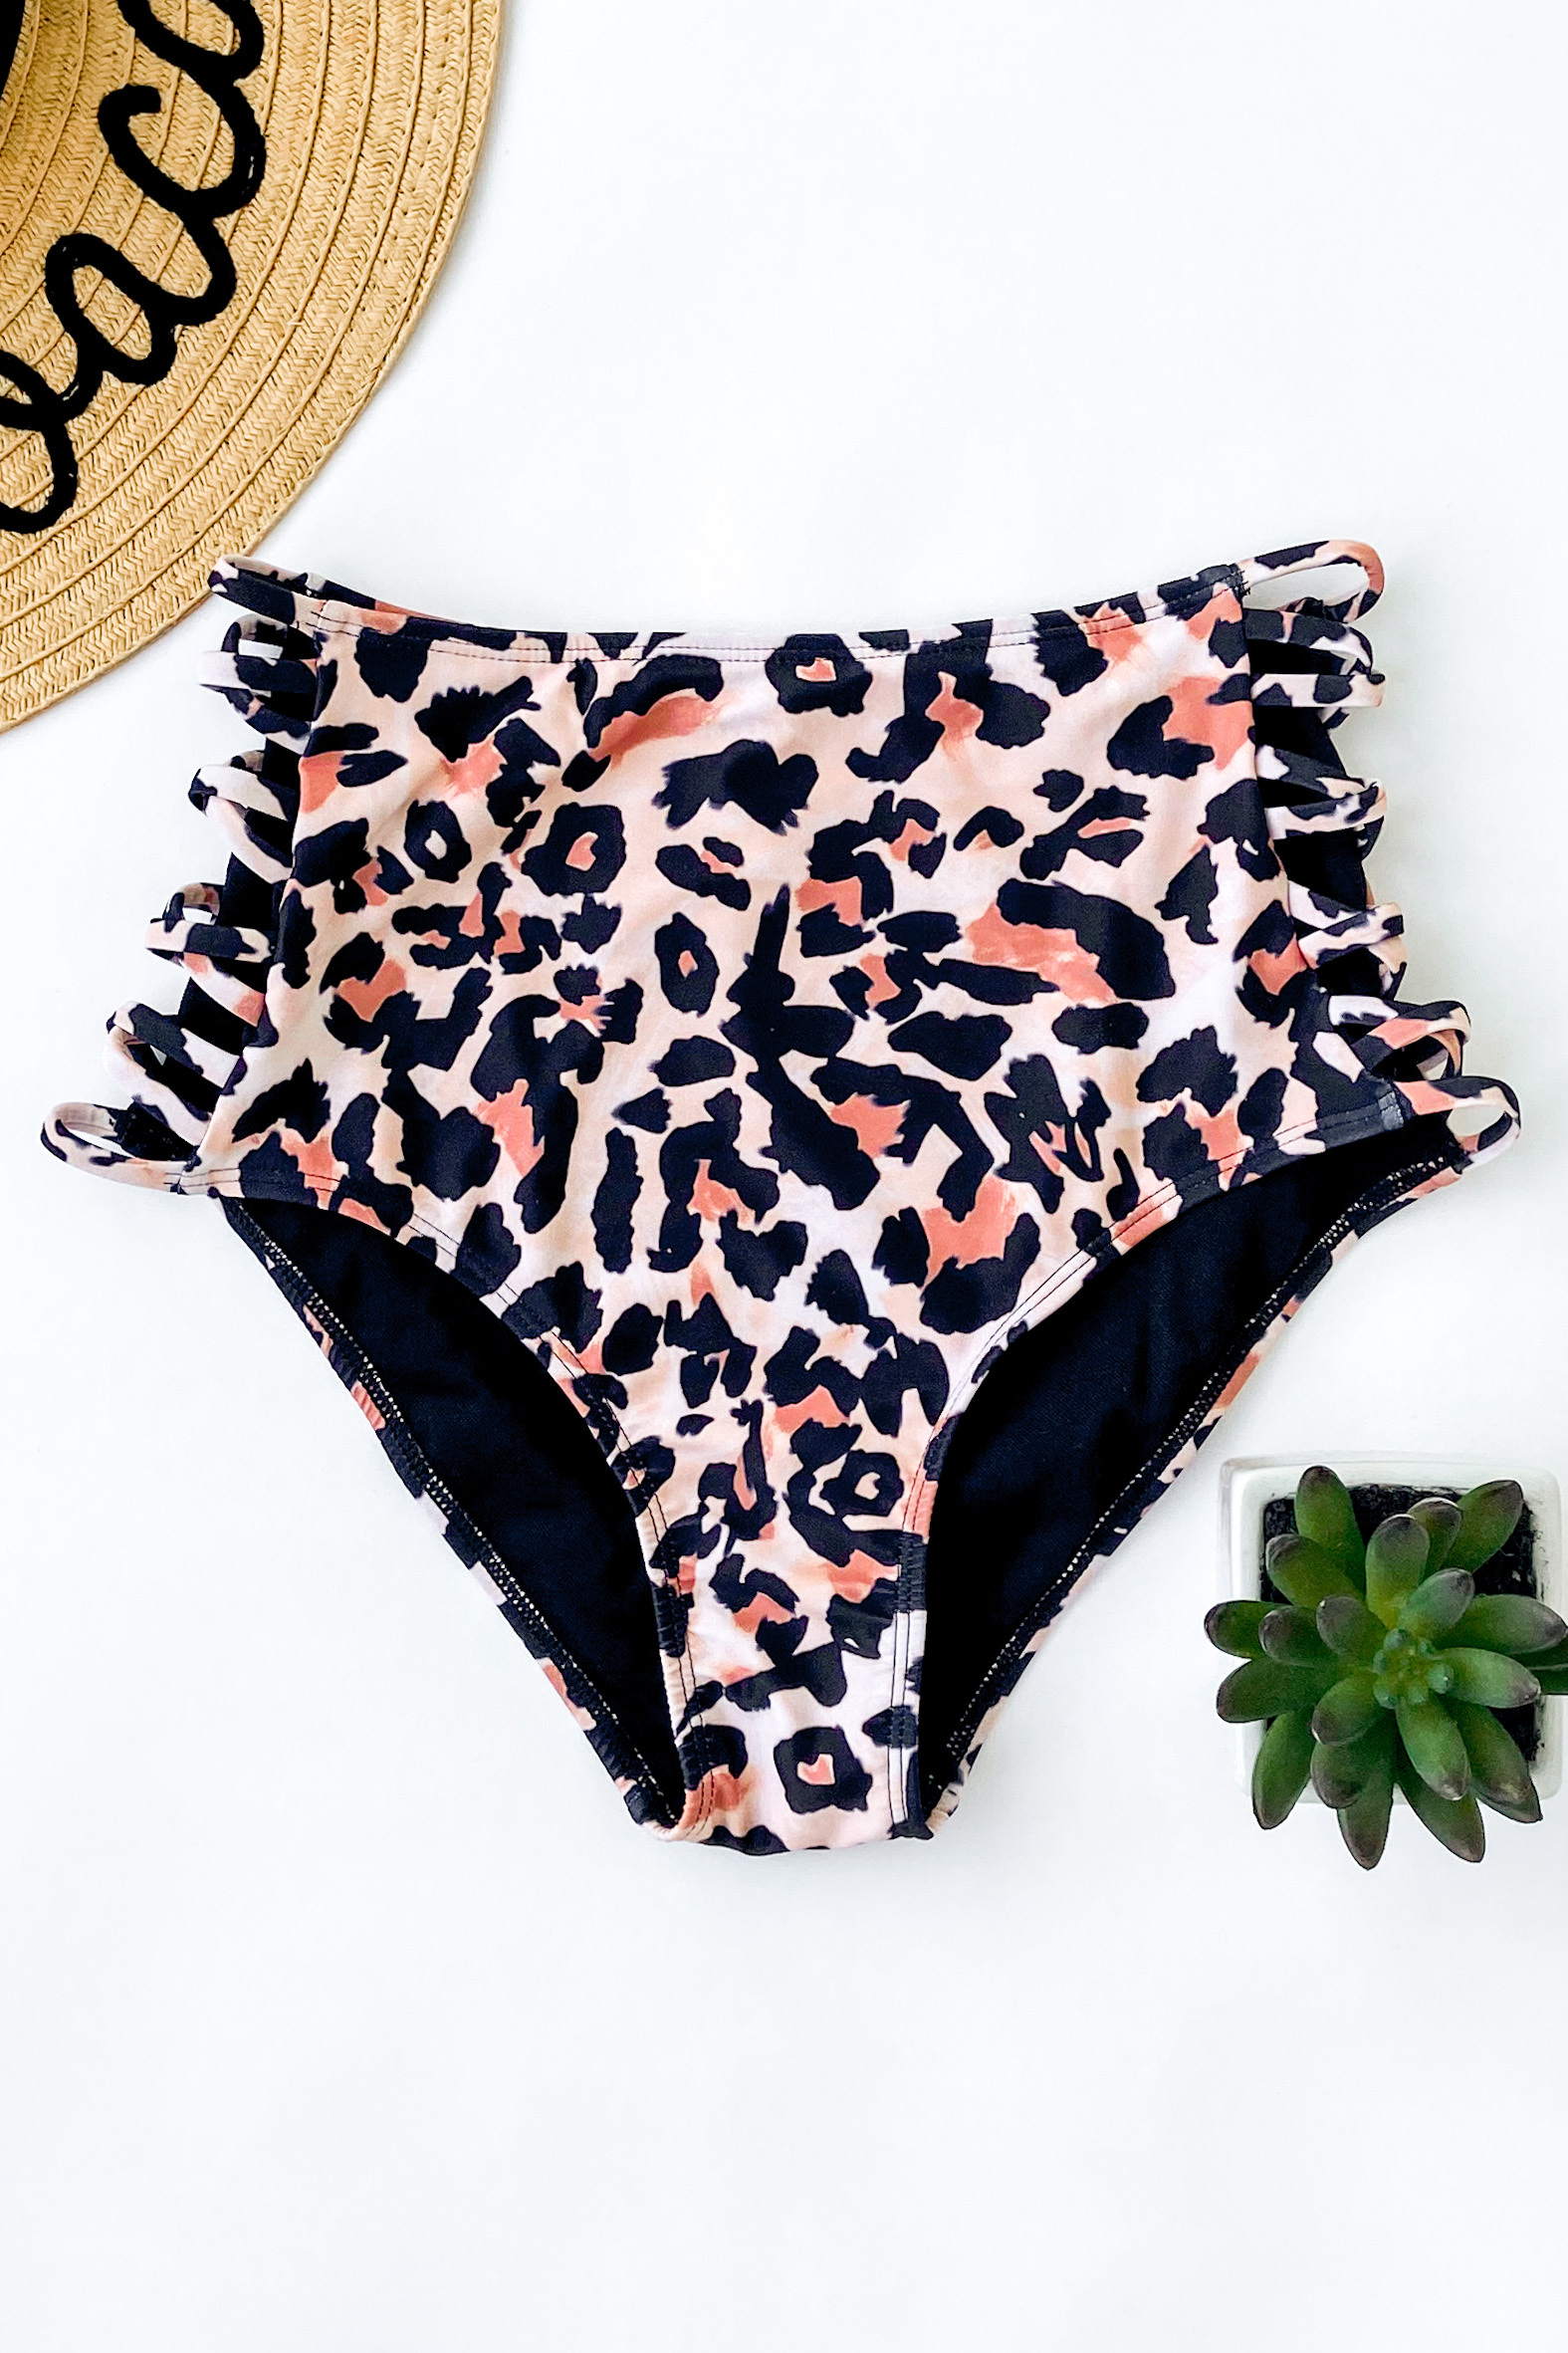 High Waisted Leopard Criss Cross Swimsuit Bottoms